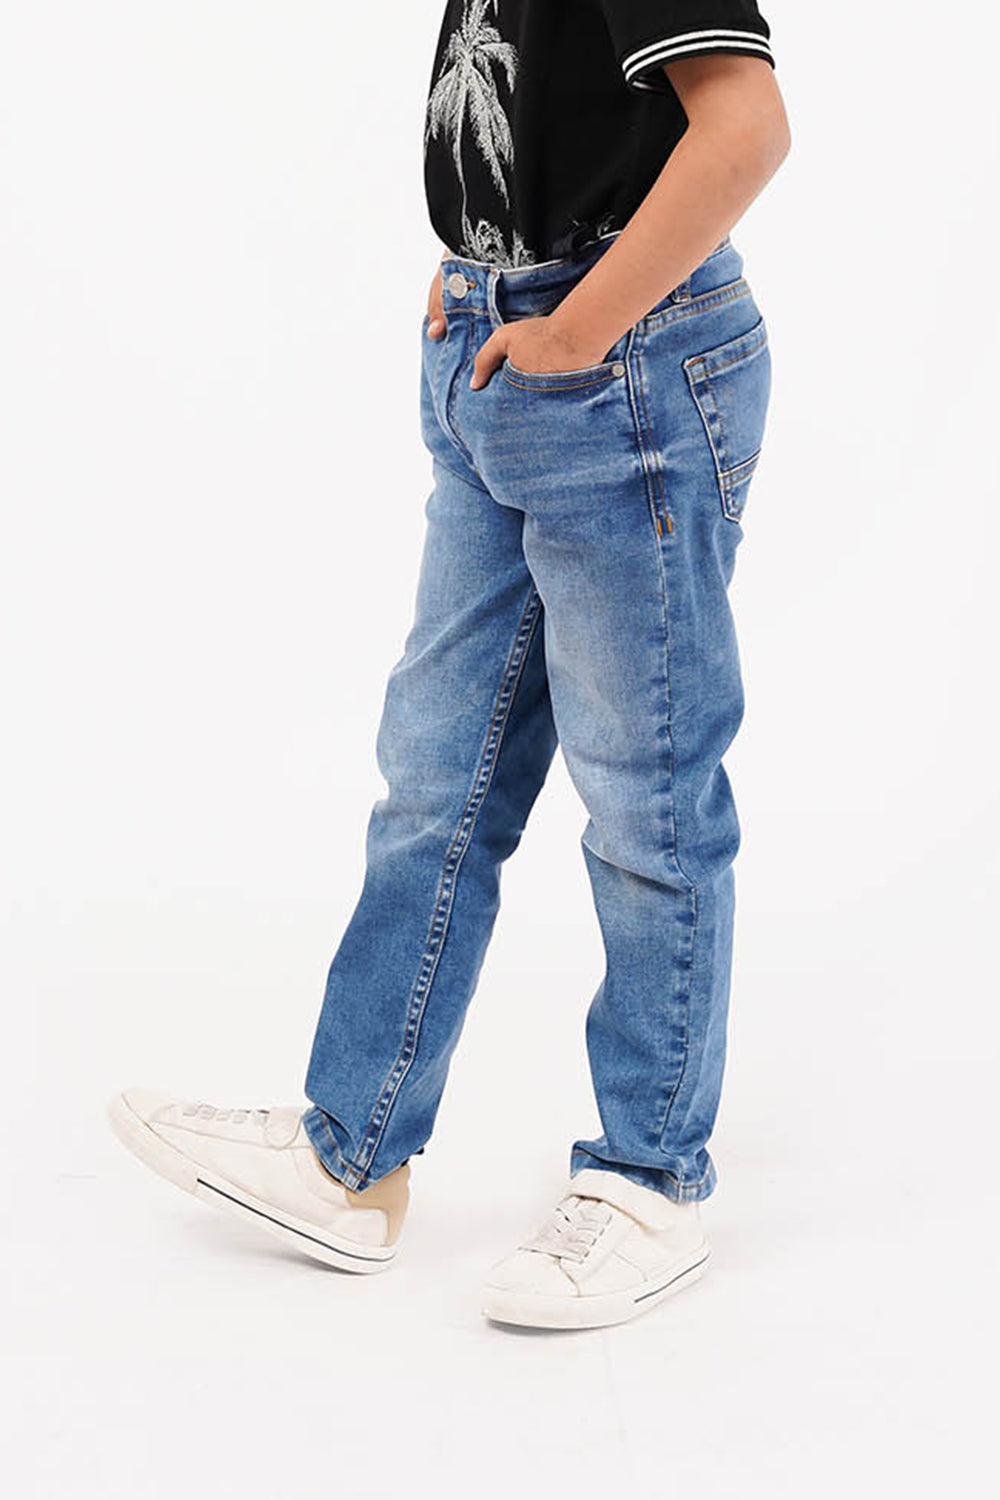 Boy's Fashion Jeans